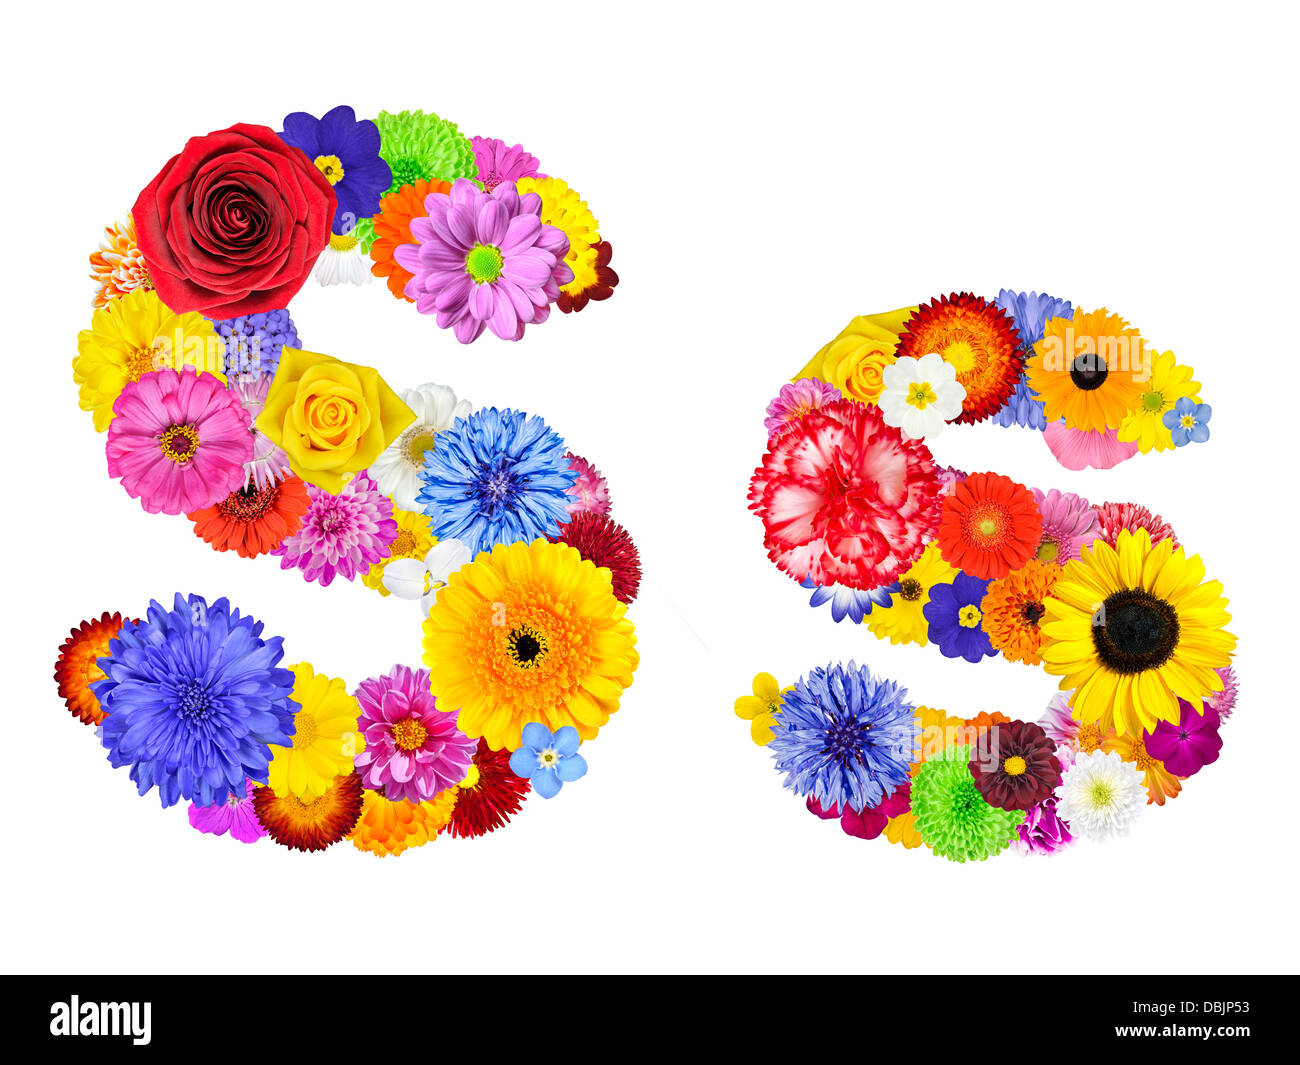 Buchstabe S Flower Alphabet, Isolated on White. Buchstaben bestehen aus vielen bunten und originellen Blumen Stockfoto